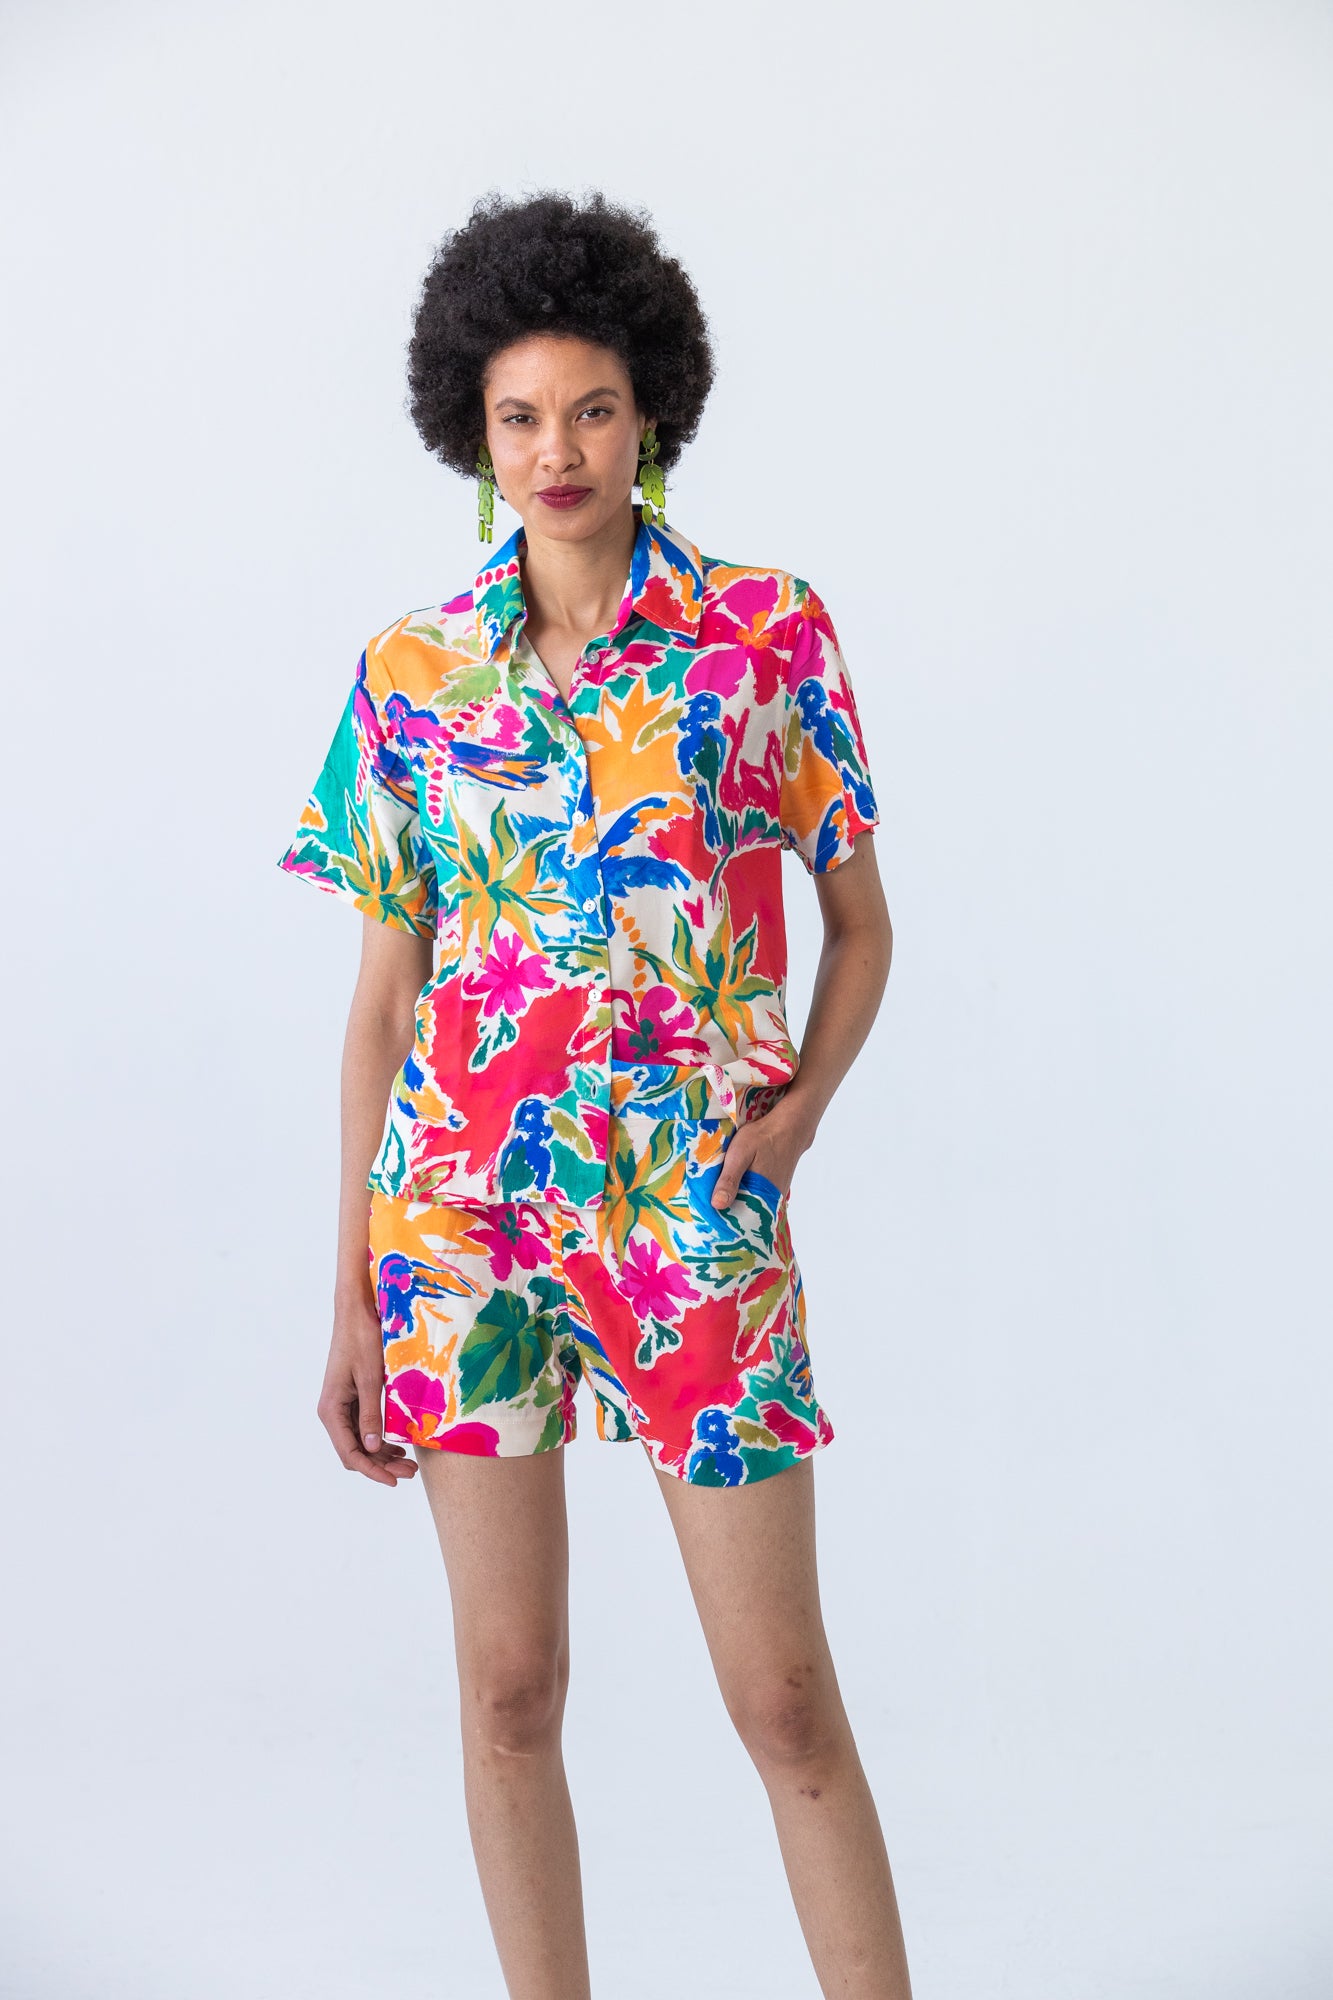 Bermuda Shirt - Tropical